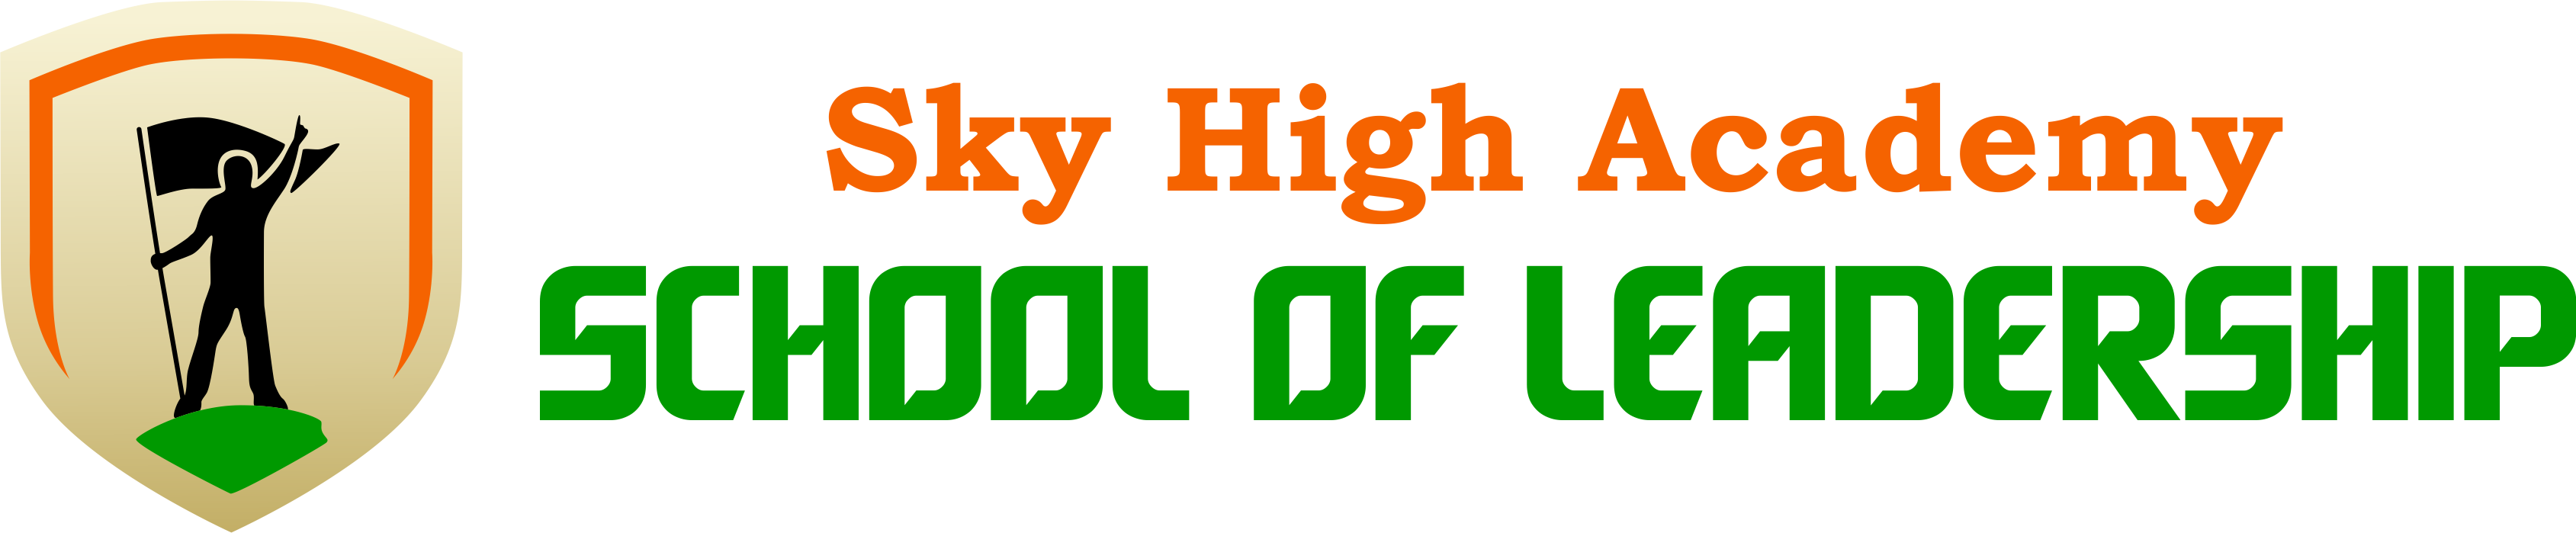 Sky High Academy Logo